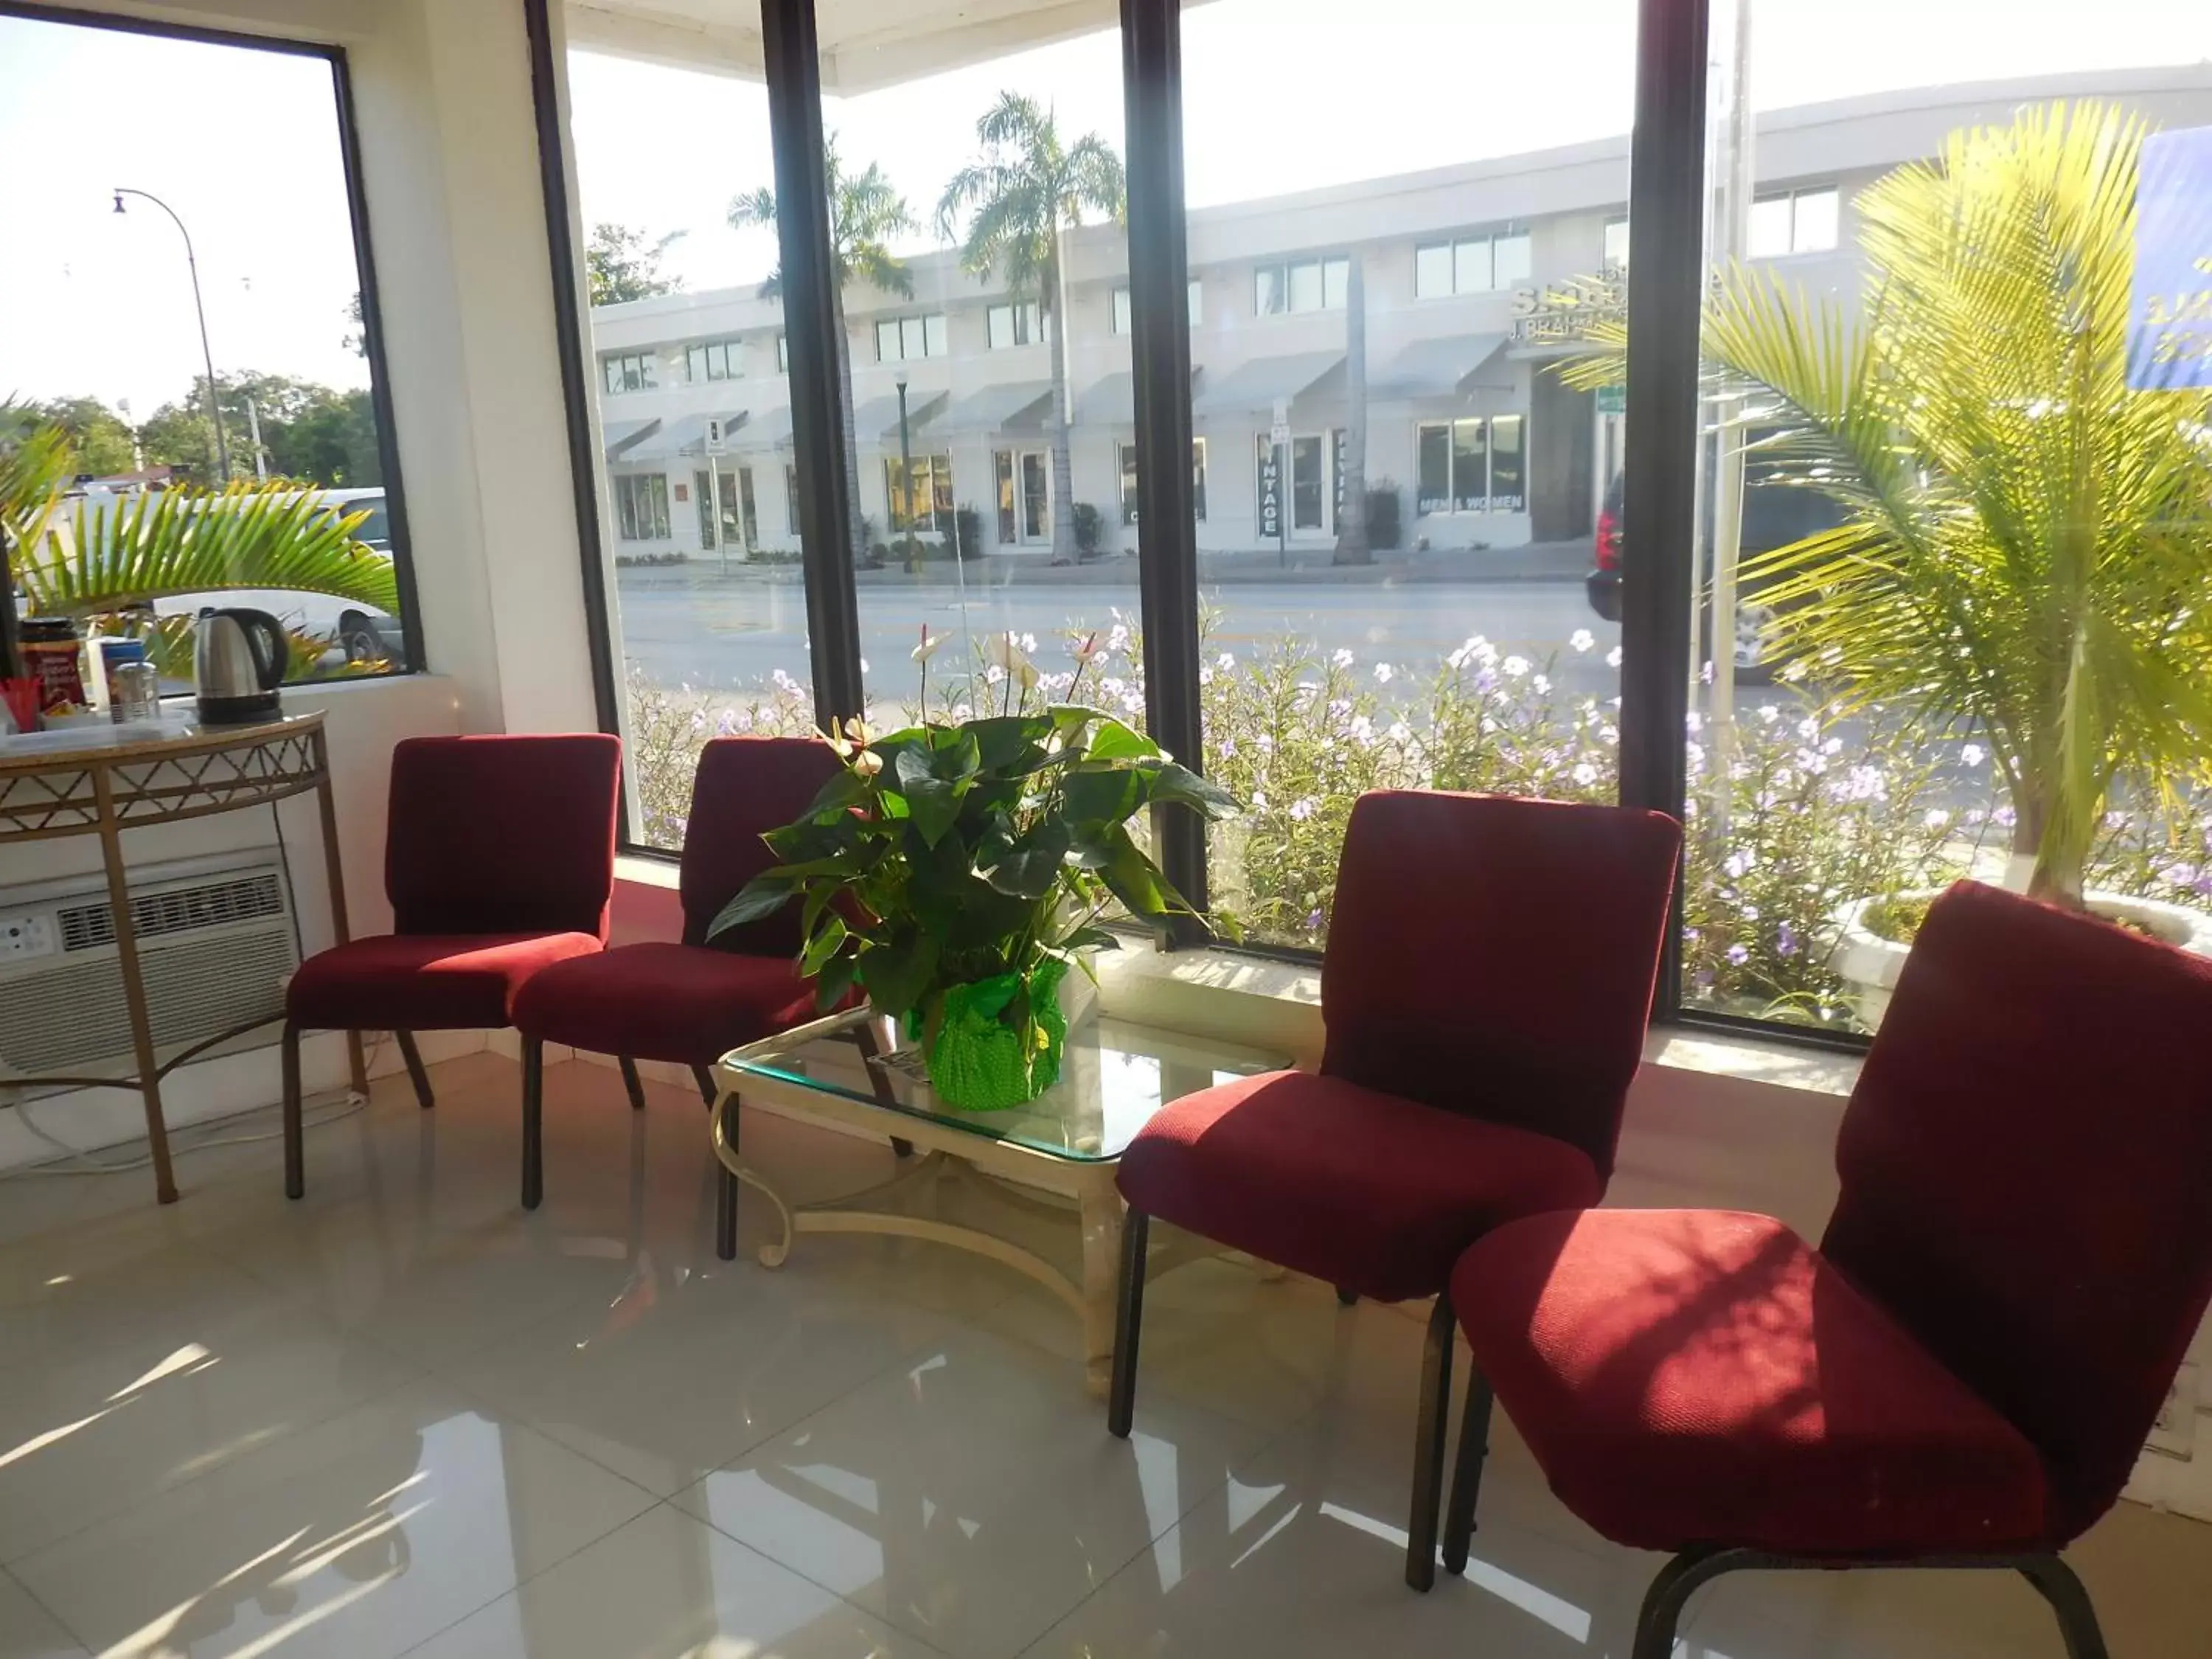 Lobby or reception in Shalimar Motel